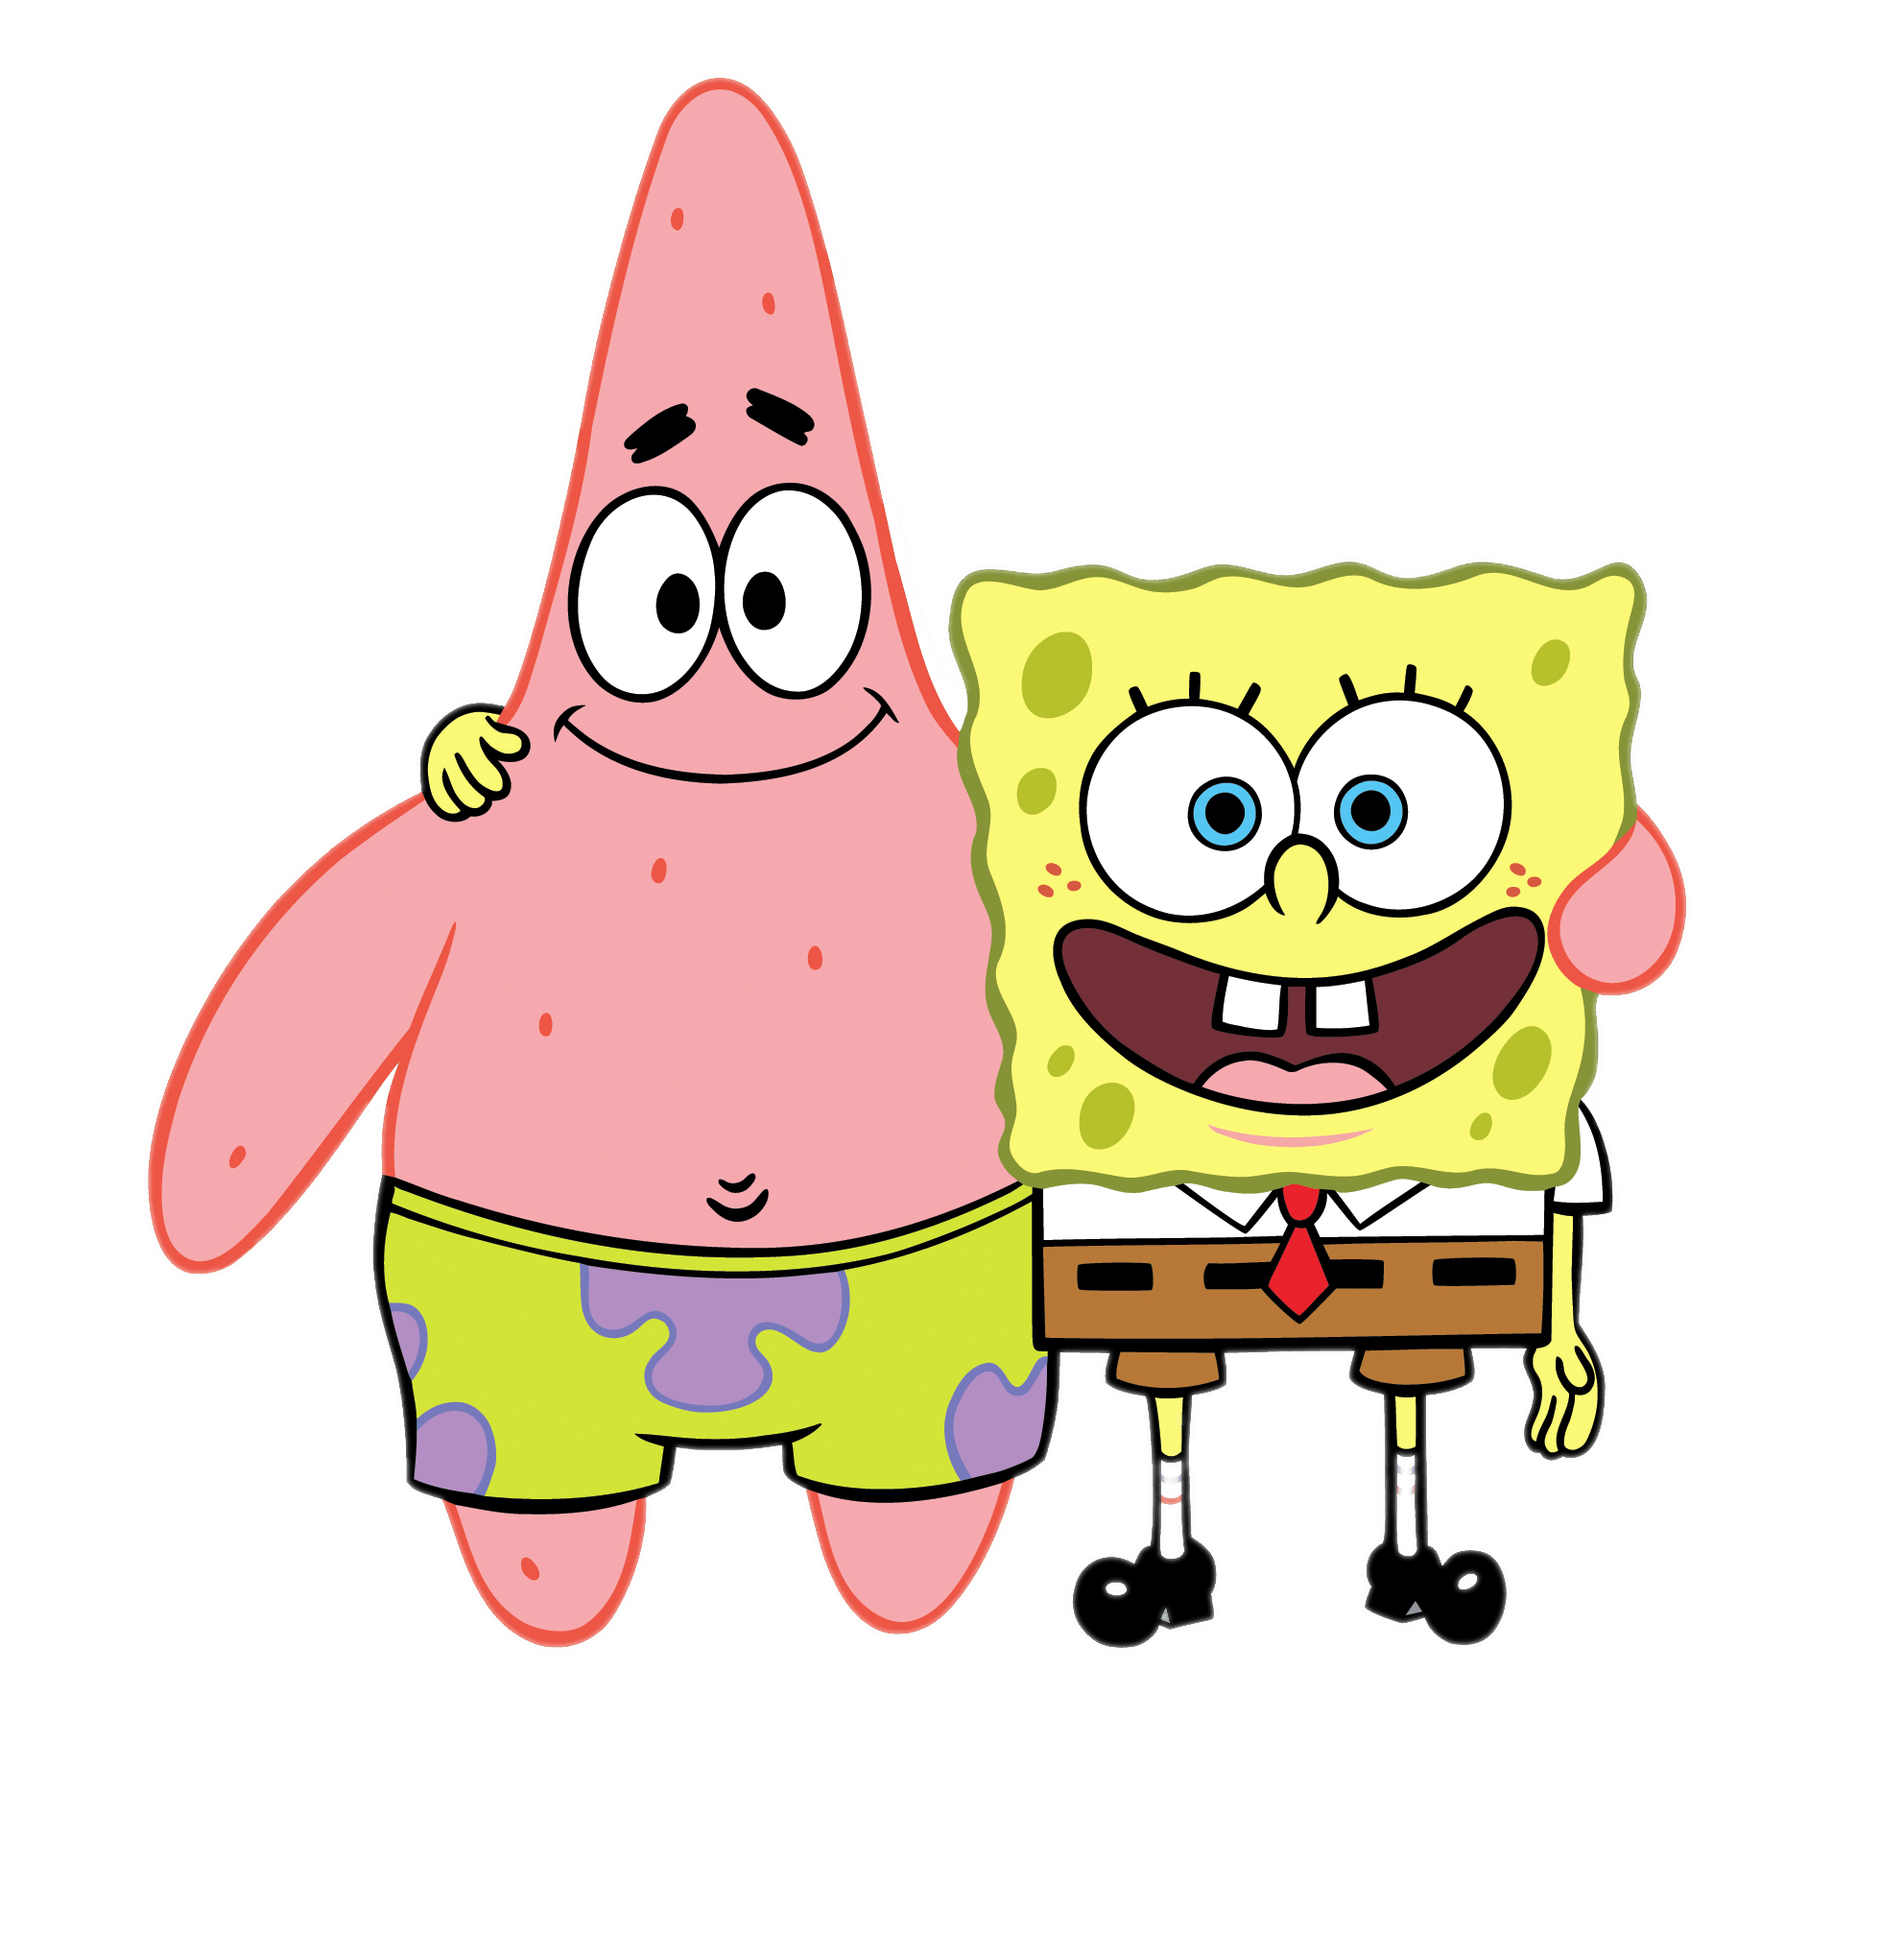 SpongeBob PNG Picture